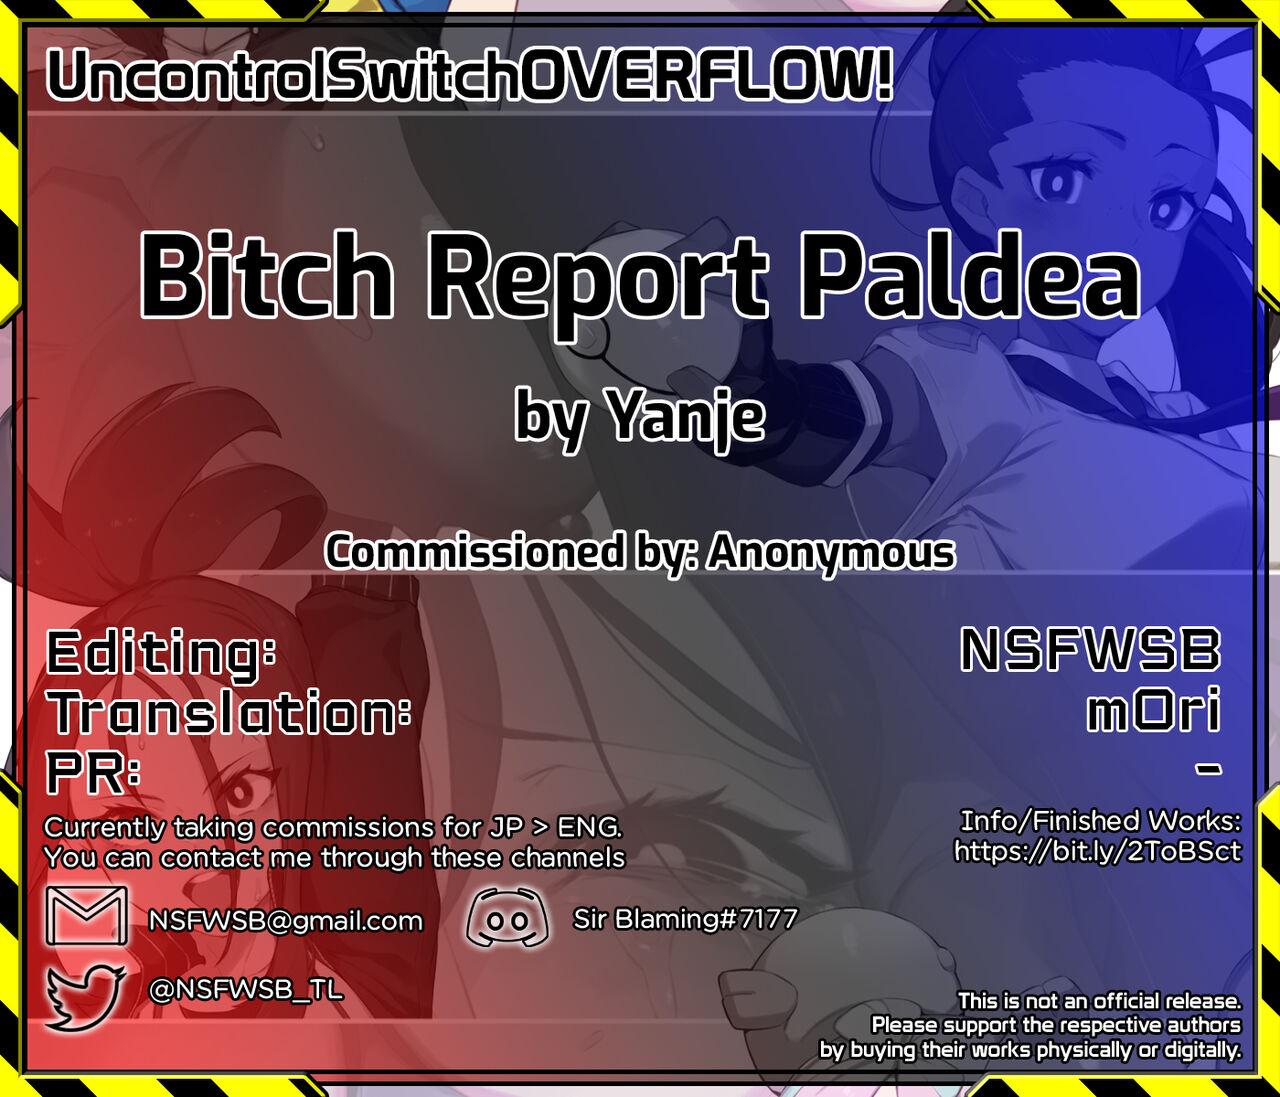 Bitch Report Paldea 5